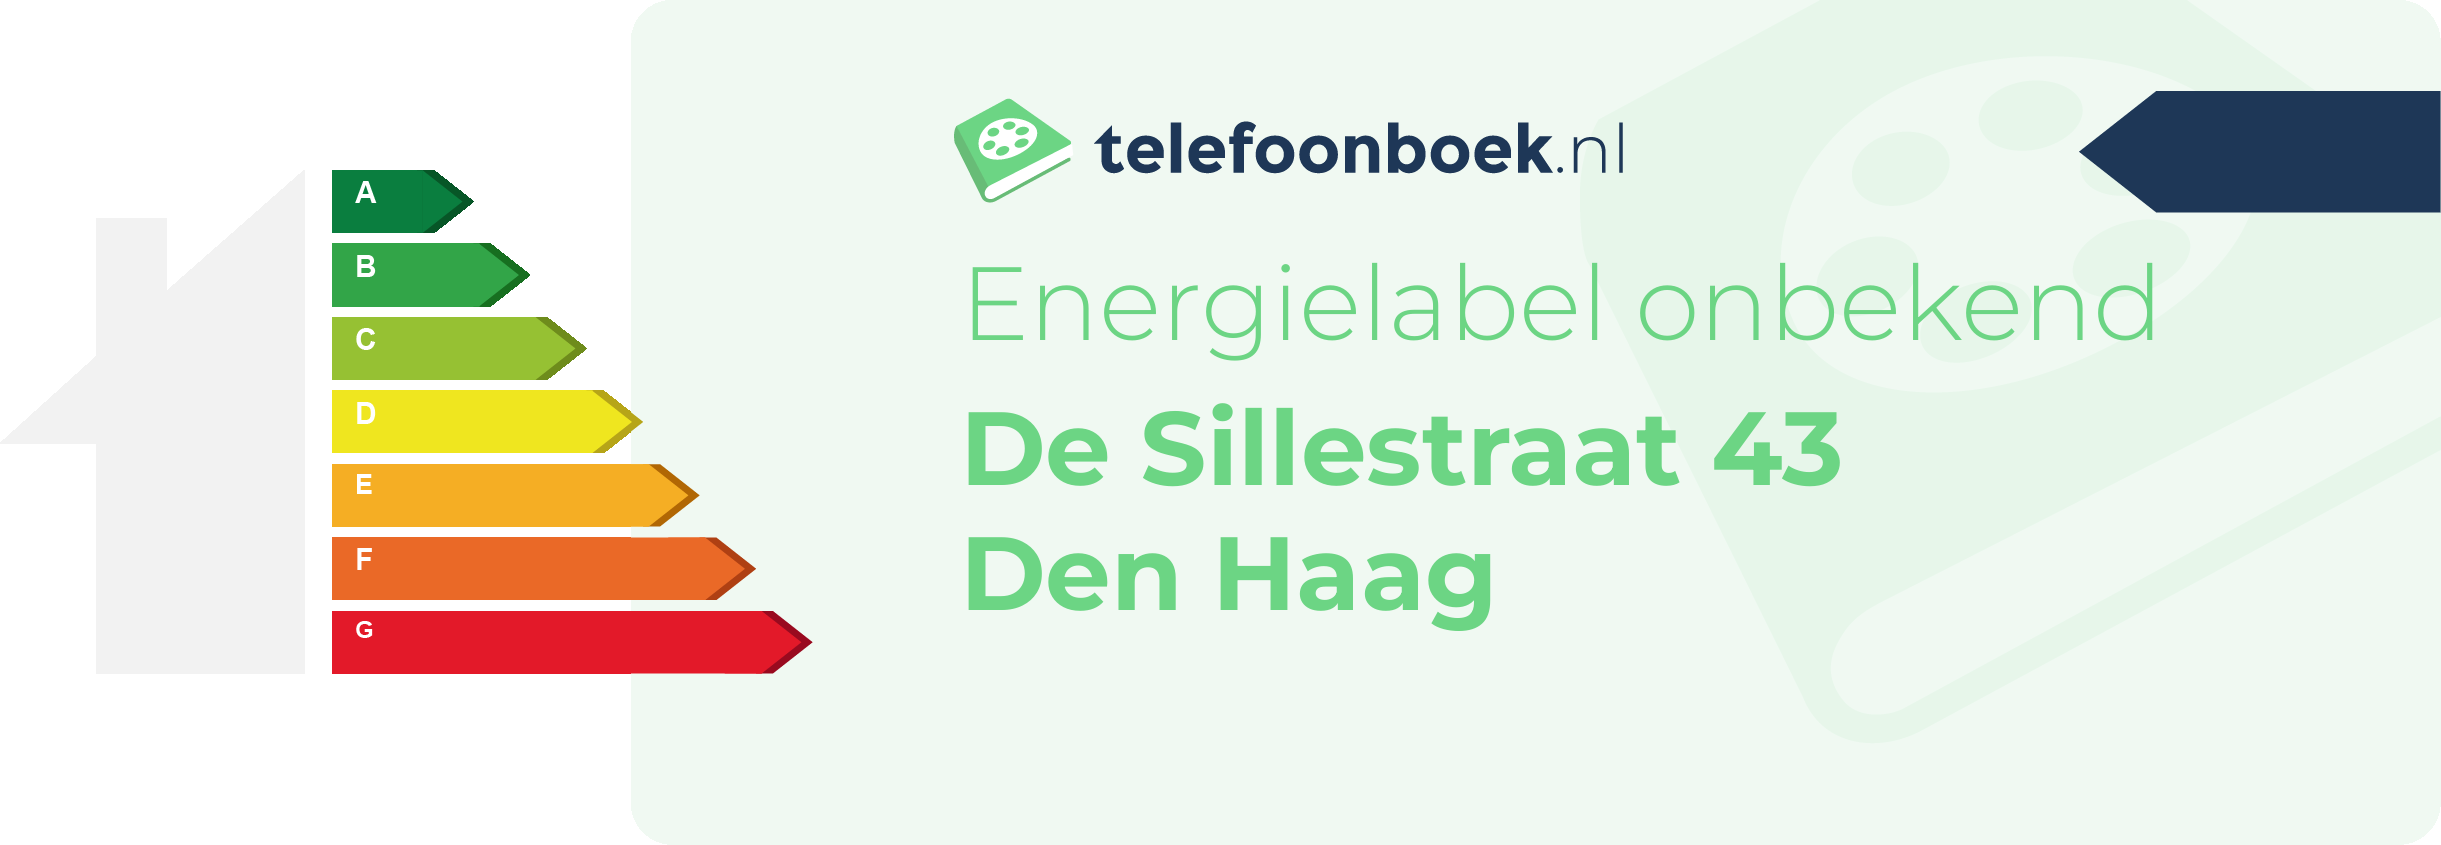 Energielabel De Sillestraat 43 Den Haag